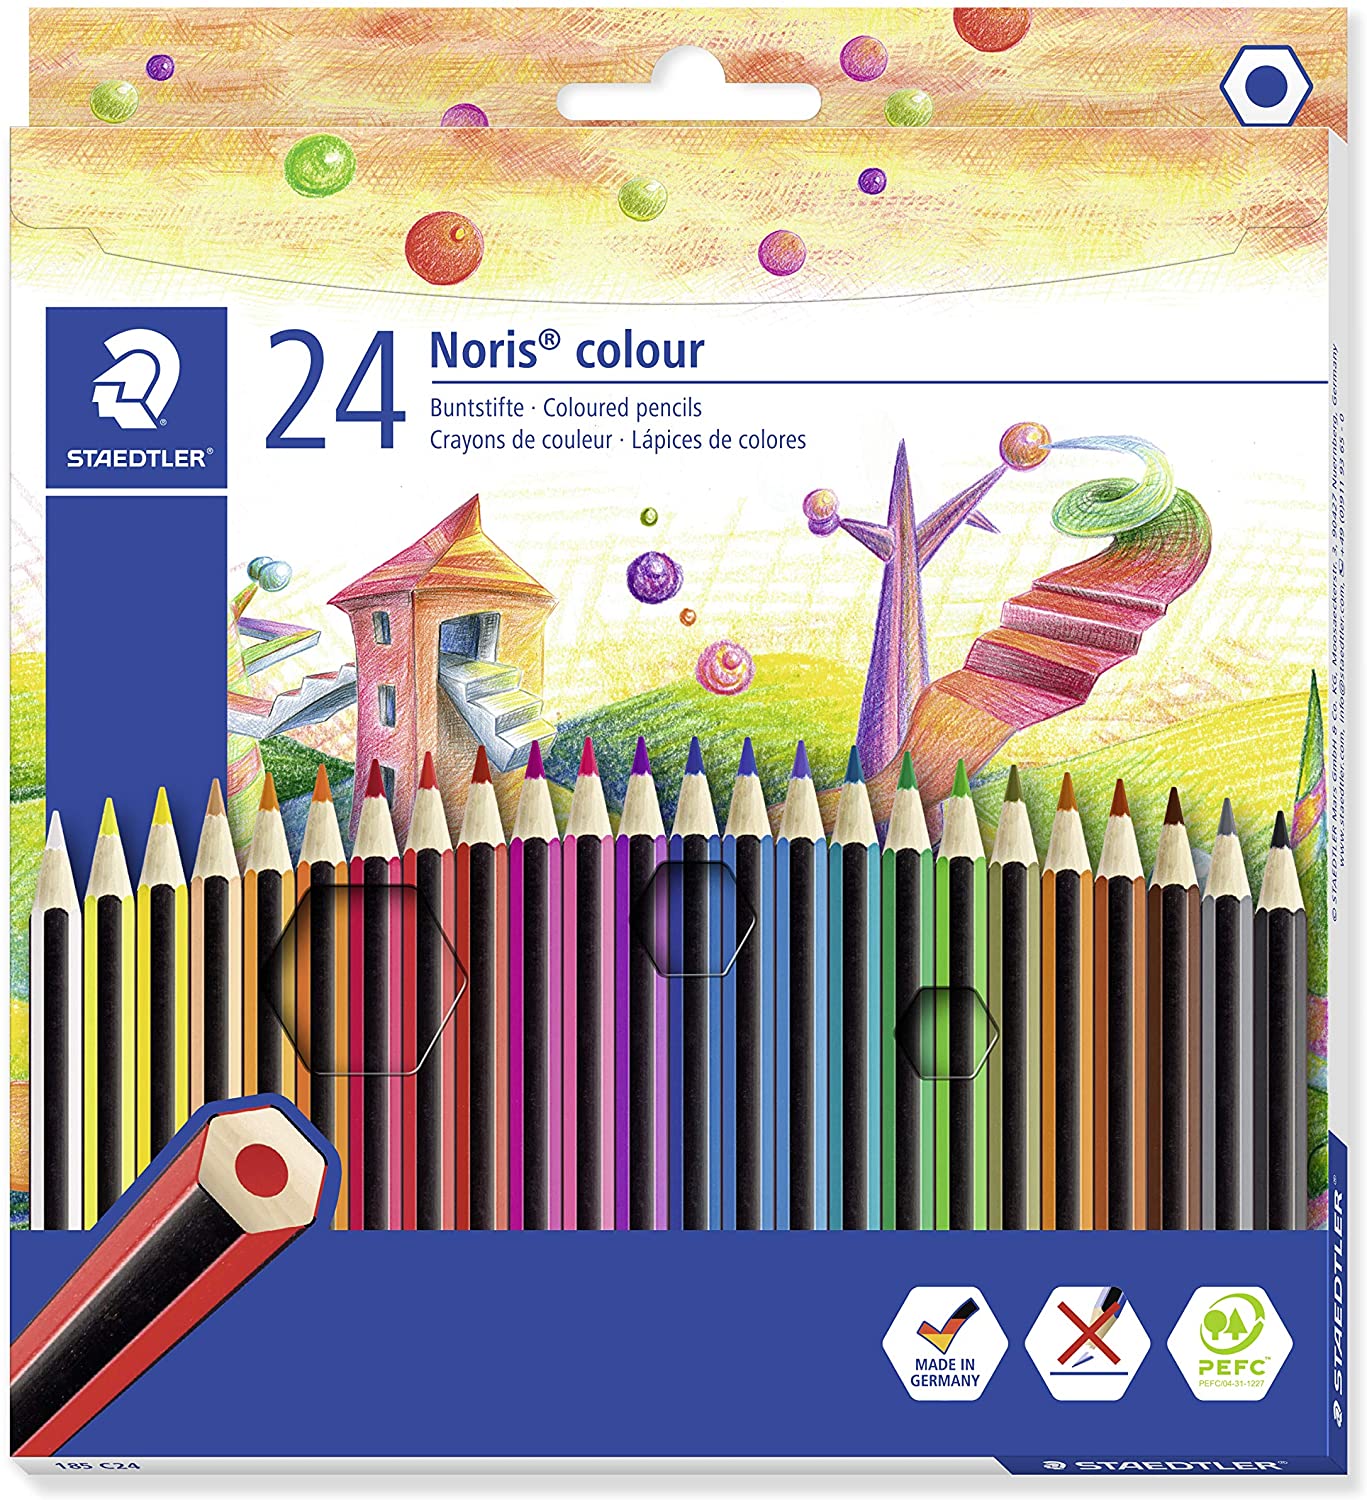 Staedtler Noris Colour 185 Pack de 24 Lapices de Colores Hexagonales - Fabricados en WOPEX - Muy Resistentes - Madera de Fuentes Sostenibles - Colores Surtidos